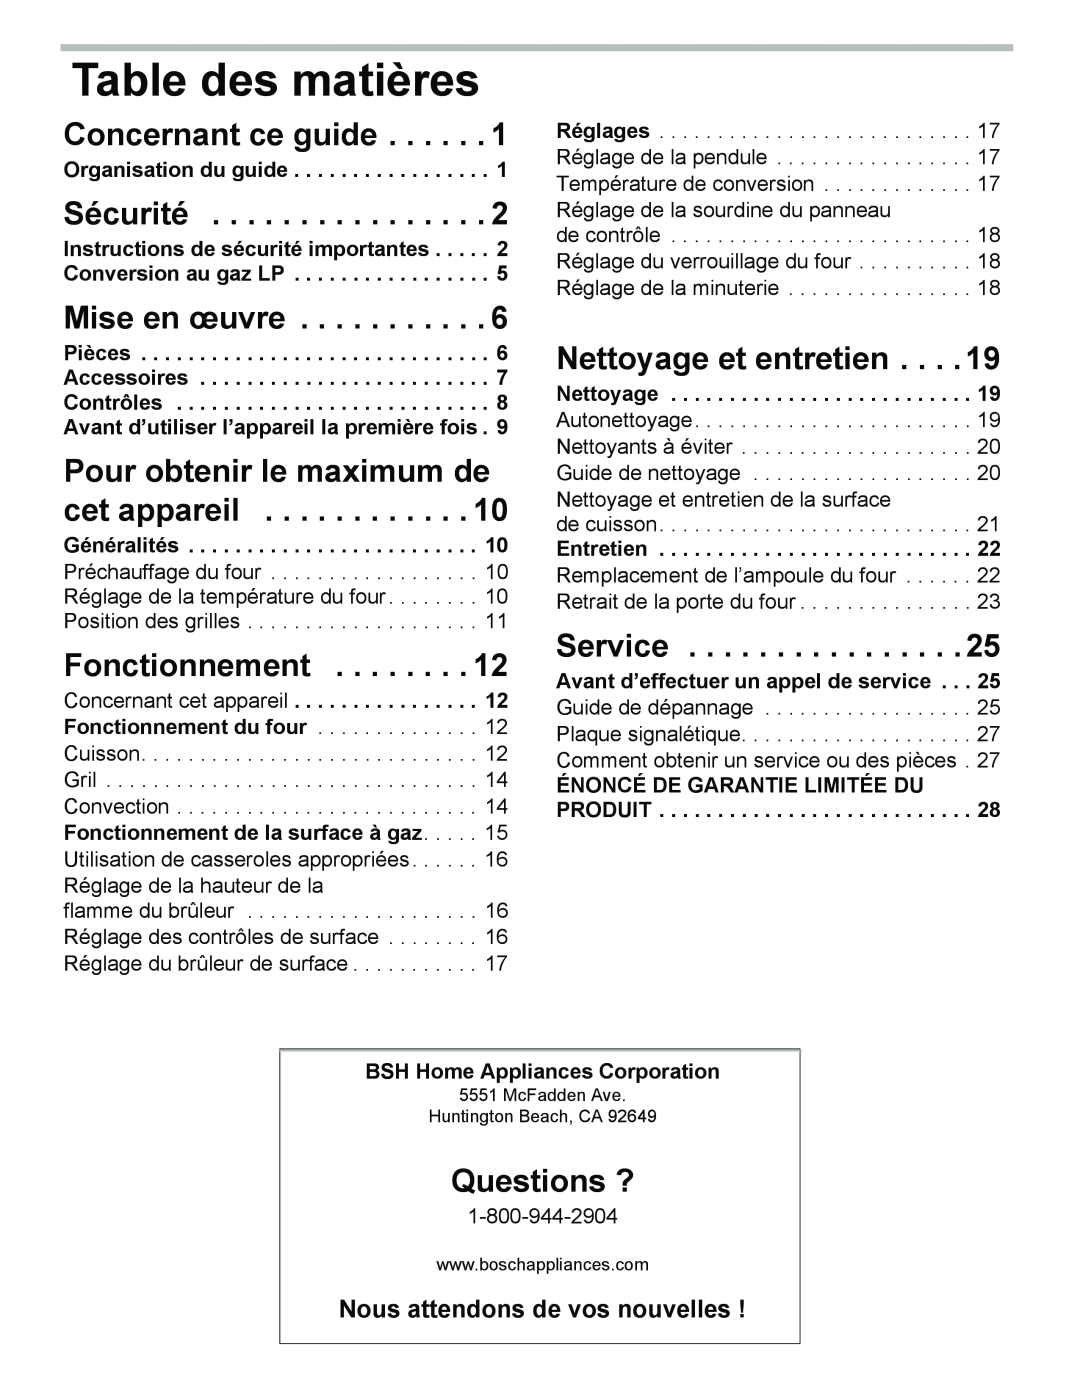 Bosch Appliances HGS3053UC Table des matières, Concernant ce guide, Sécurité, Mise en œuvre, Fonctionnement, Questions ? 